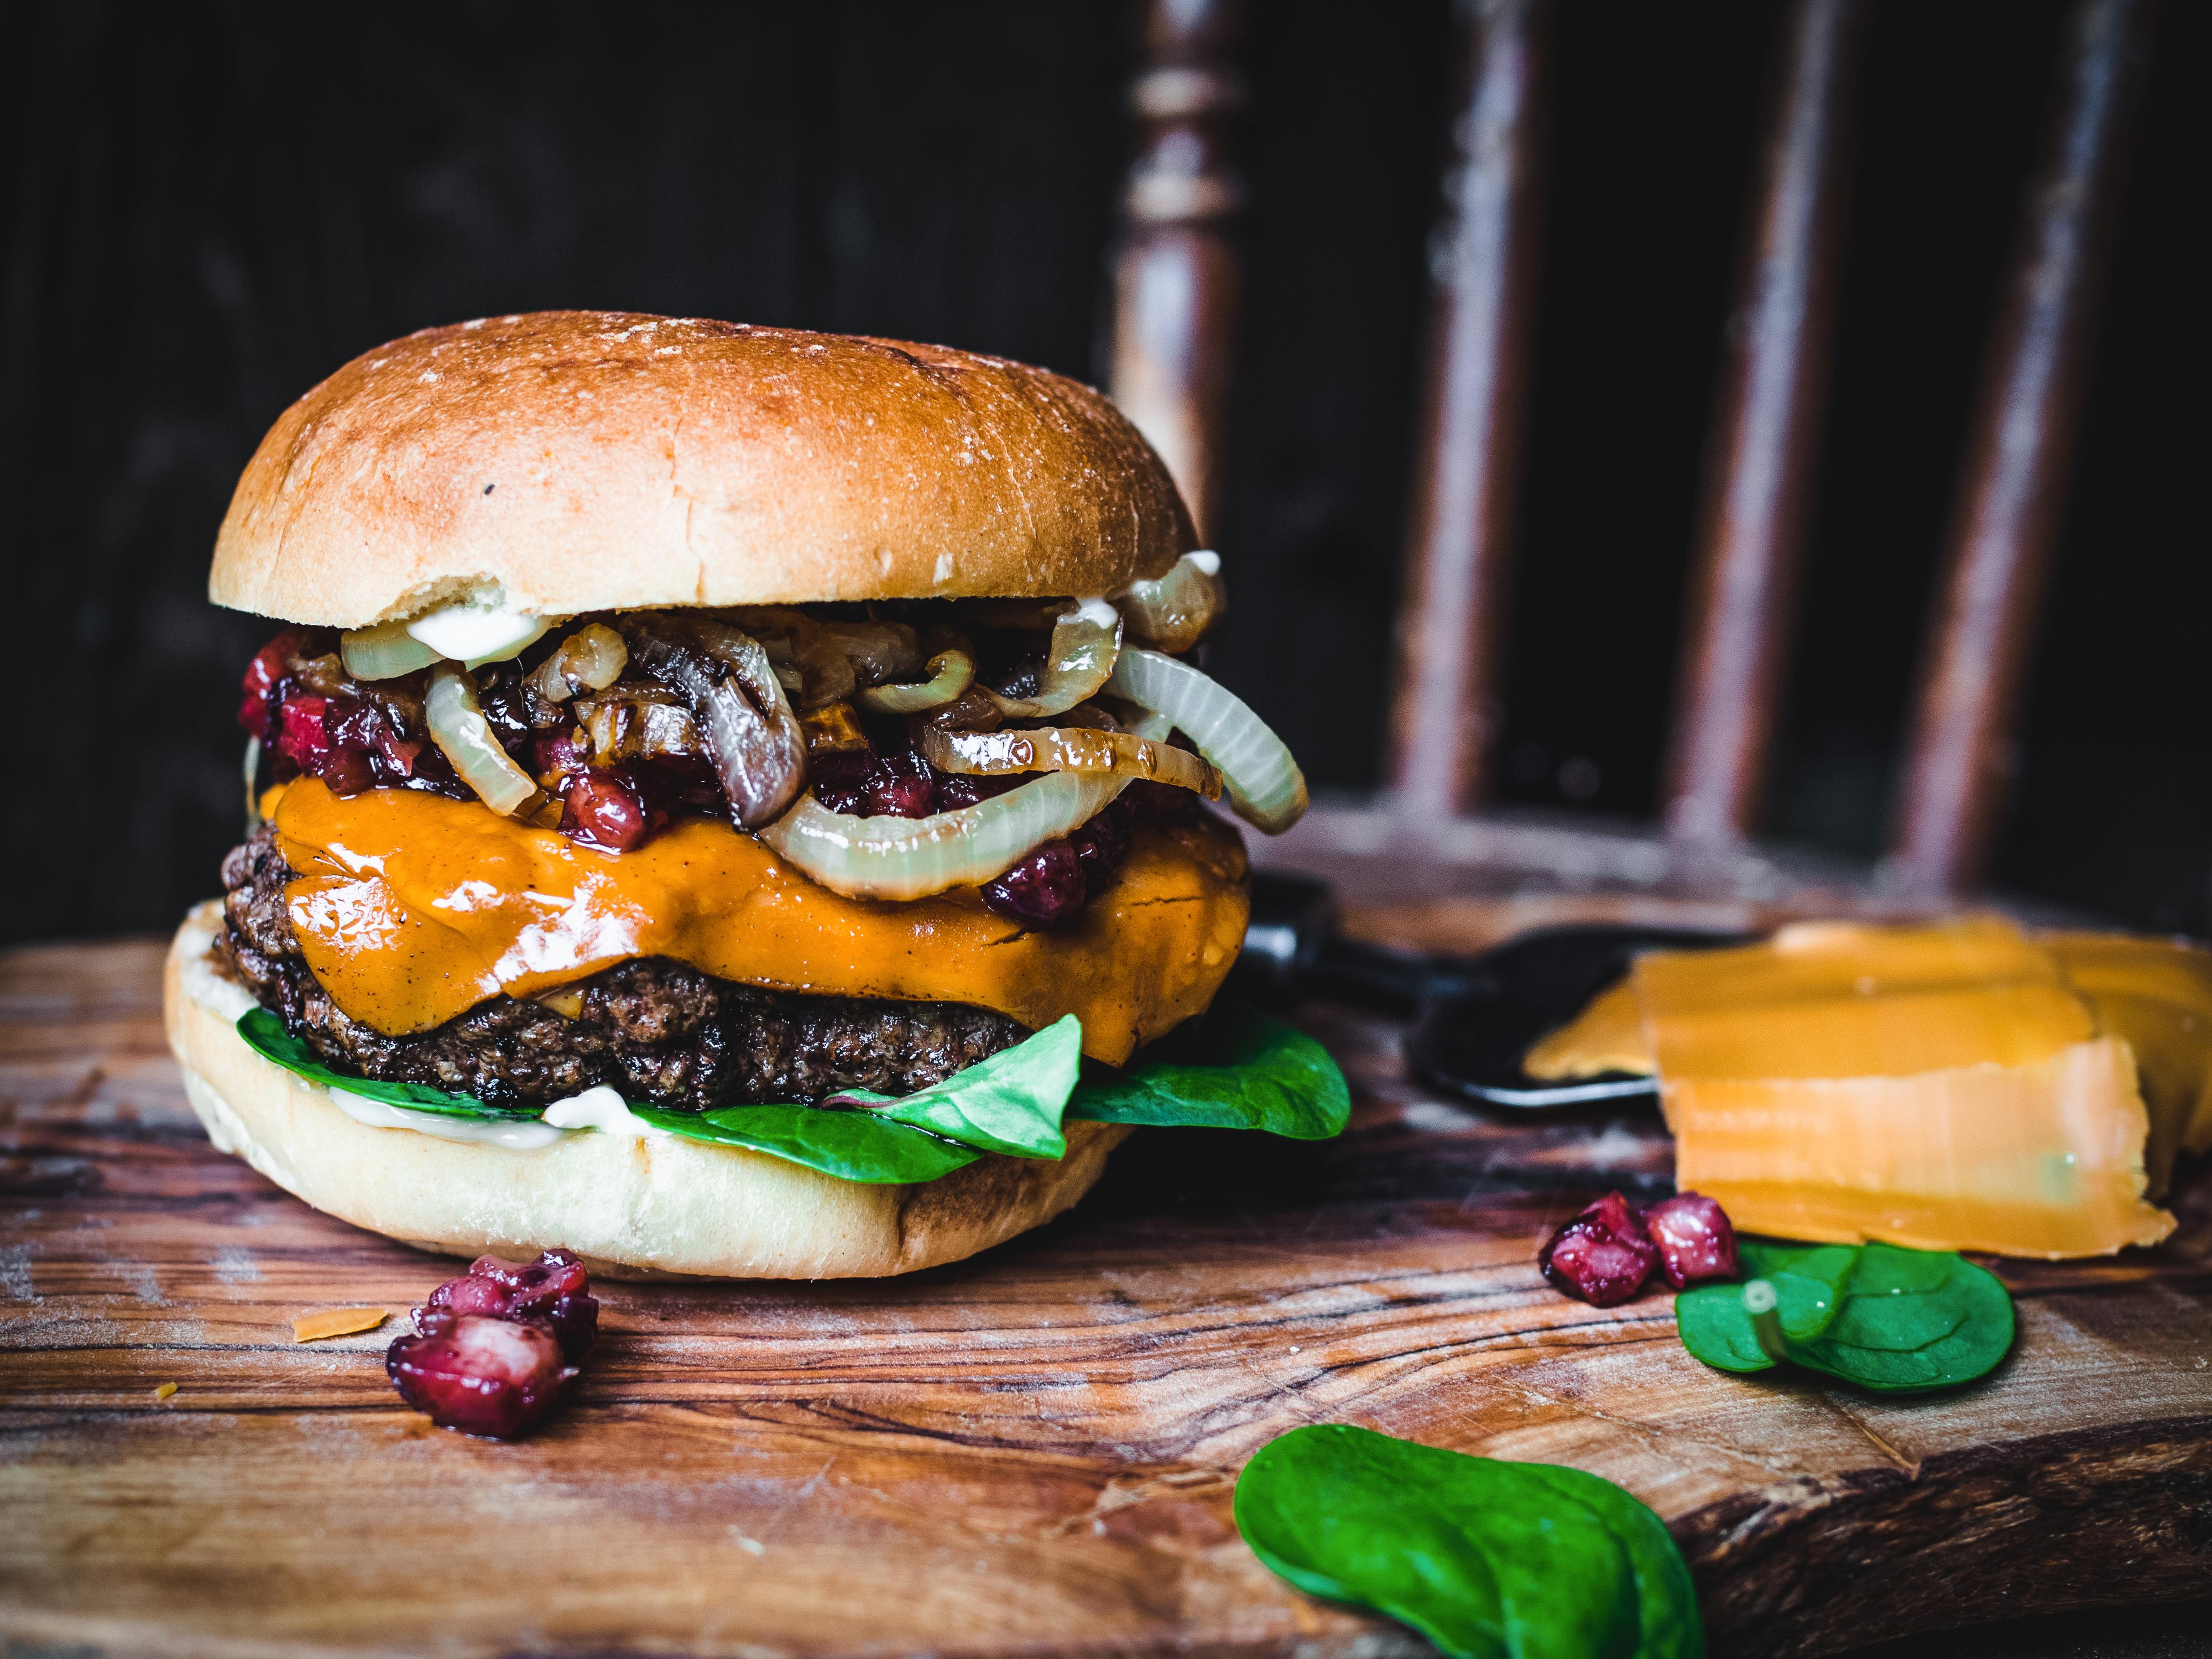 COMFORT FOOD: Prøvd brunost i burgeren før?